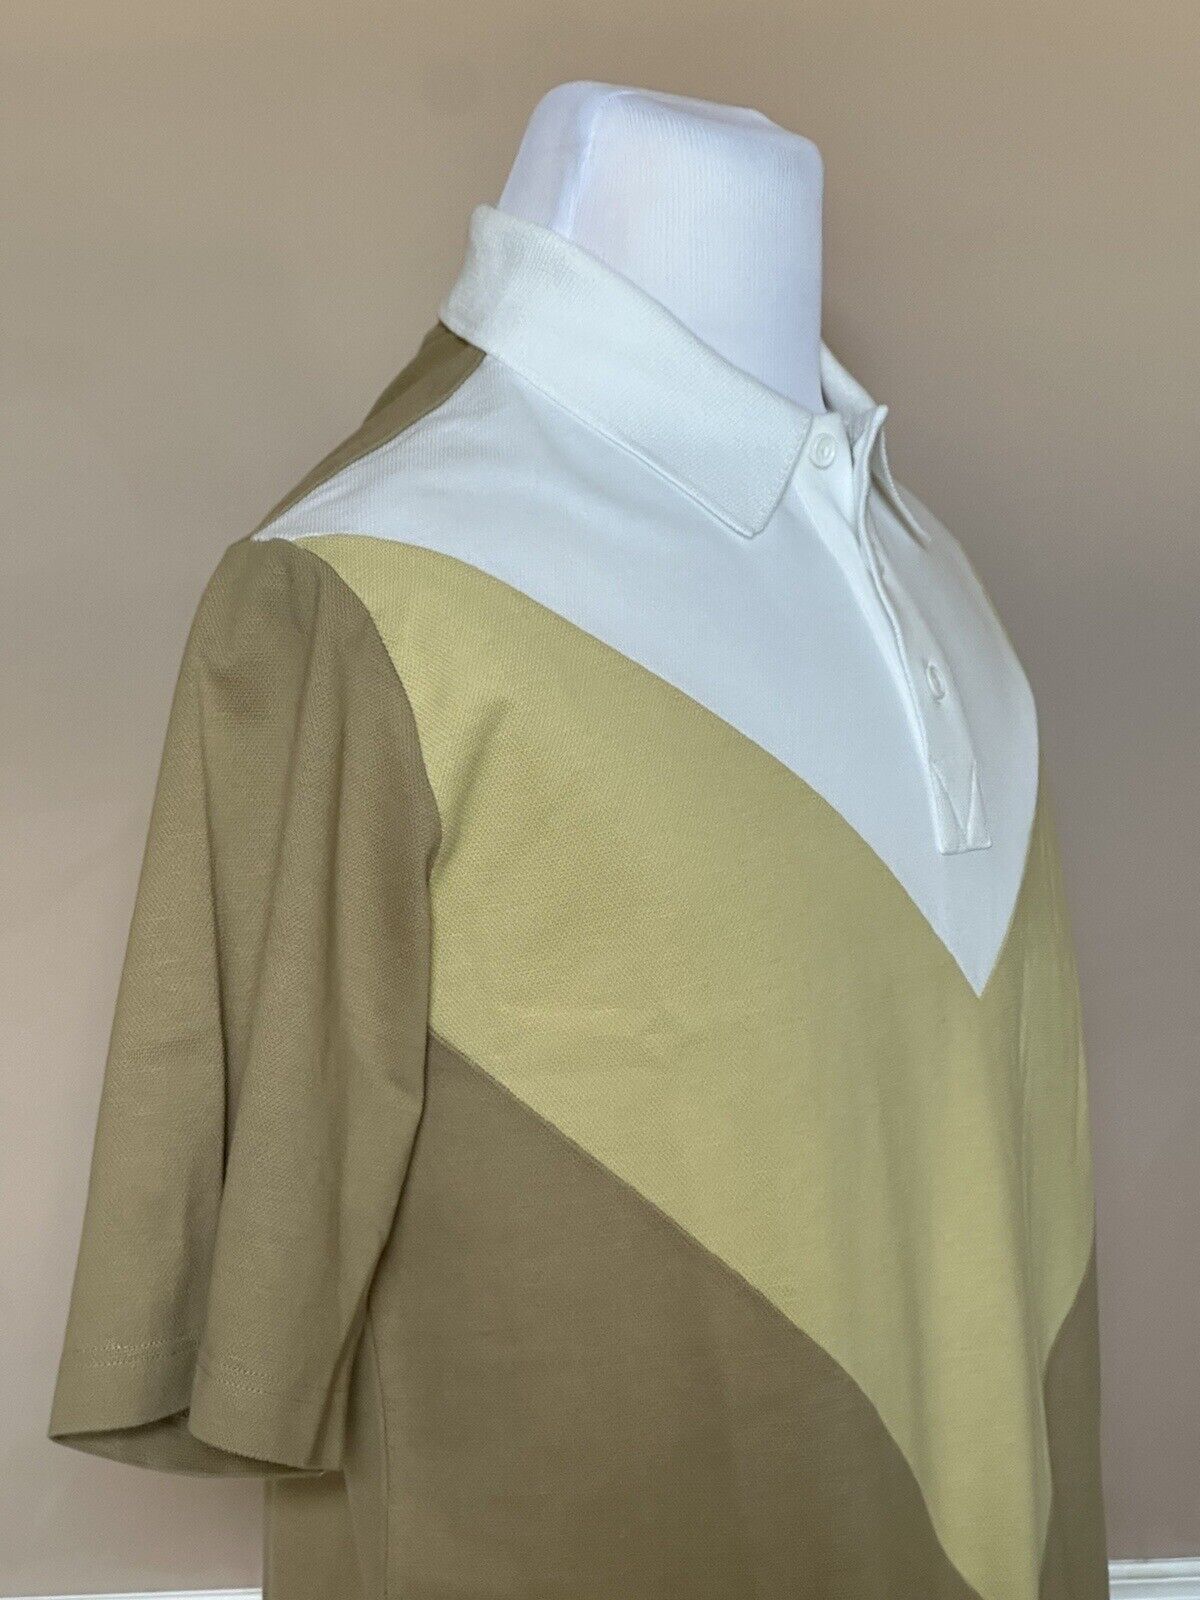 Neu mit Etikett: 700 $ Bottega Veneta Herren-Poloshirt aus Baumwoll-Piquet M (Oversized Fit) 704205 